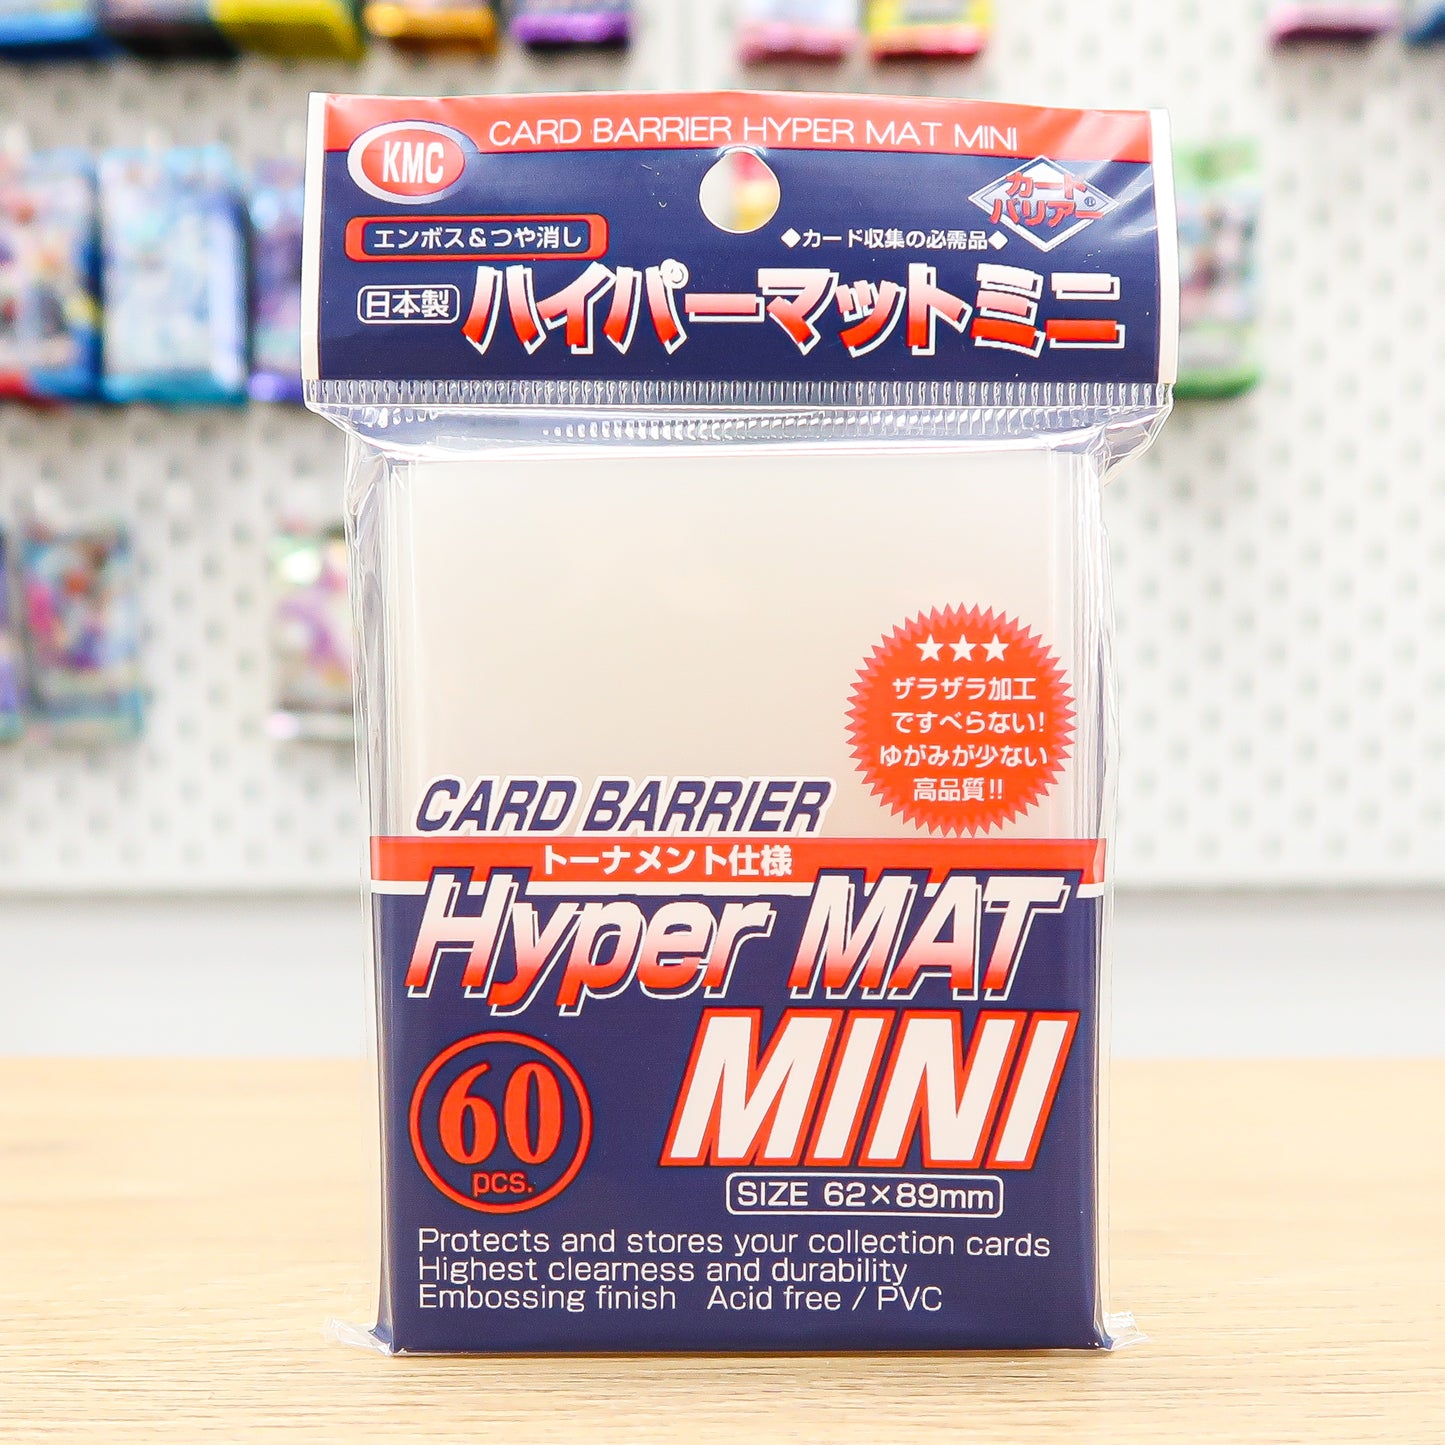 Card Barrier Hyper Mat Mini Clear